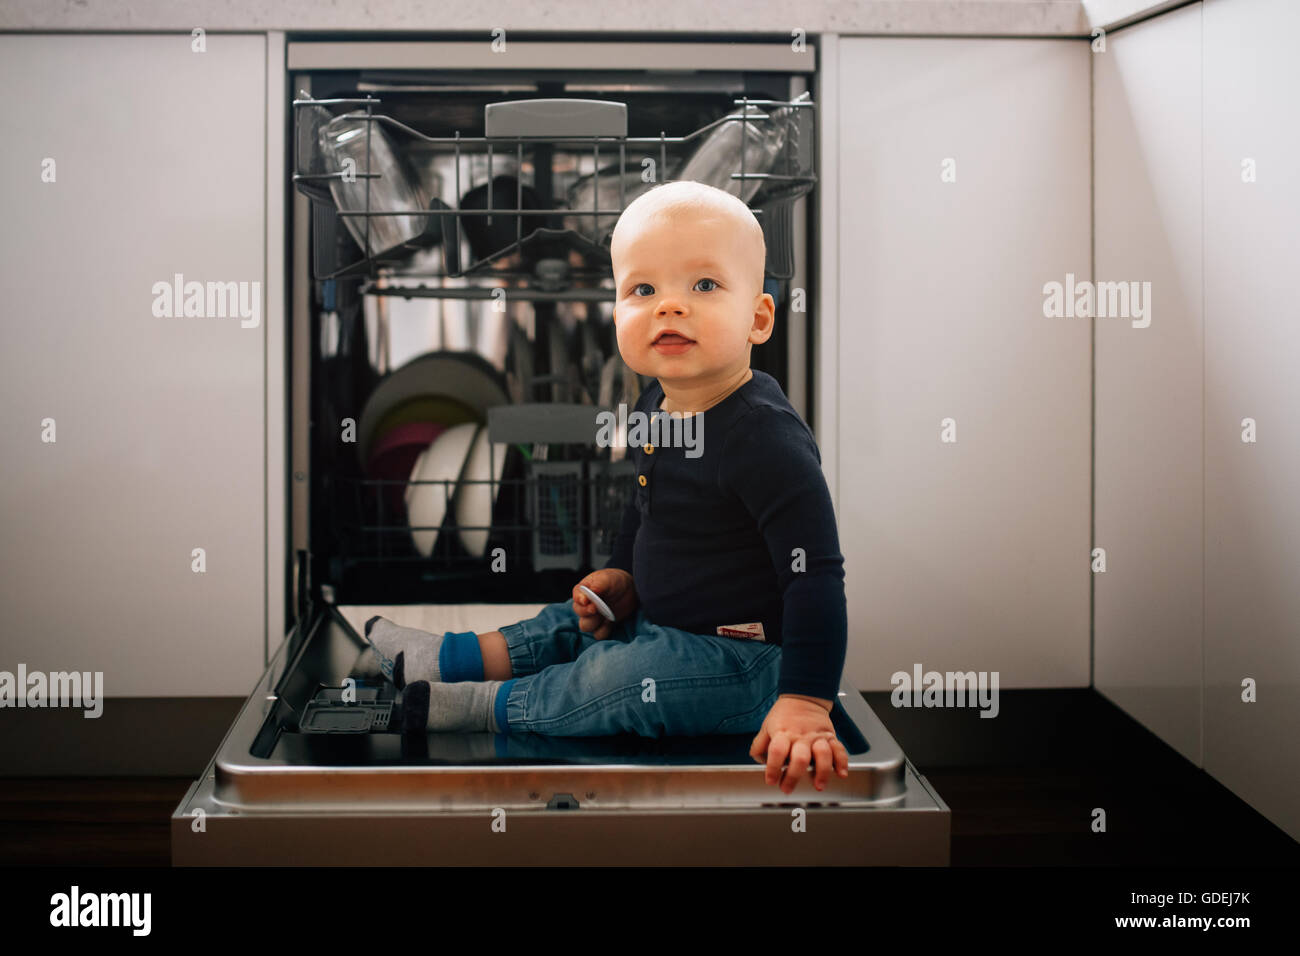 Bambino seduto su Aprire sportello di lavastoviglie Foto Stock